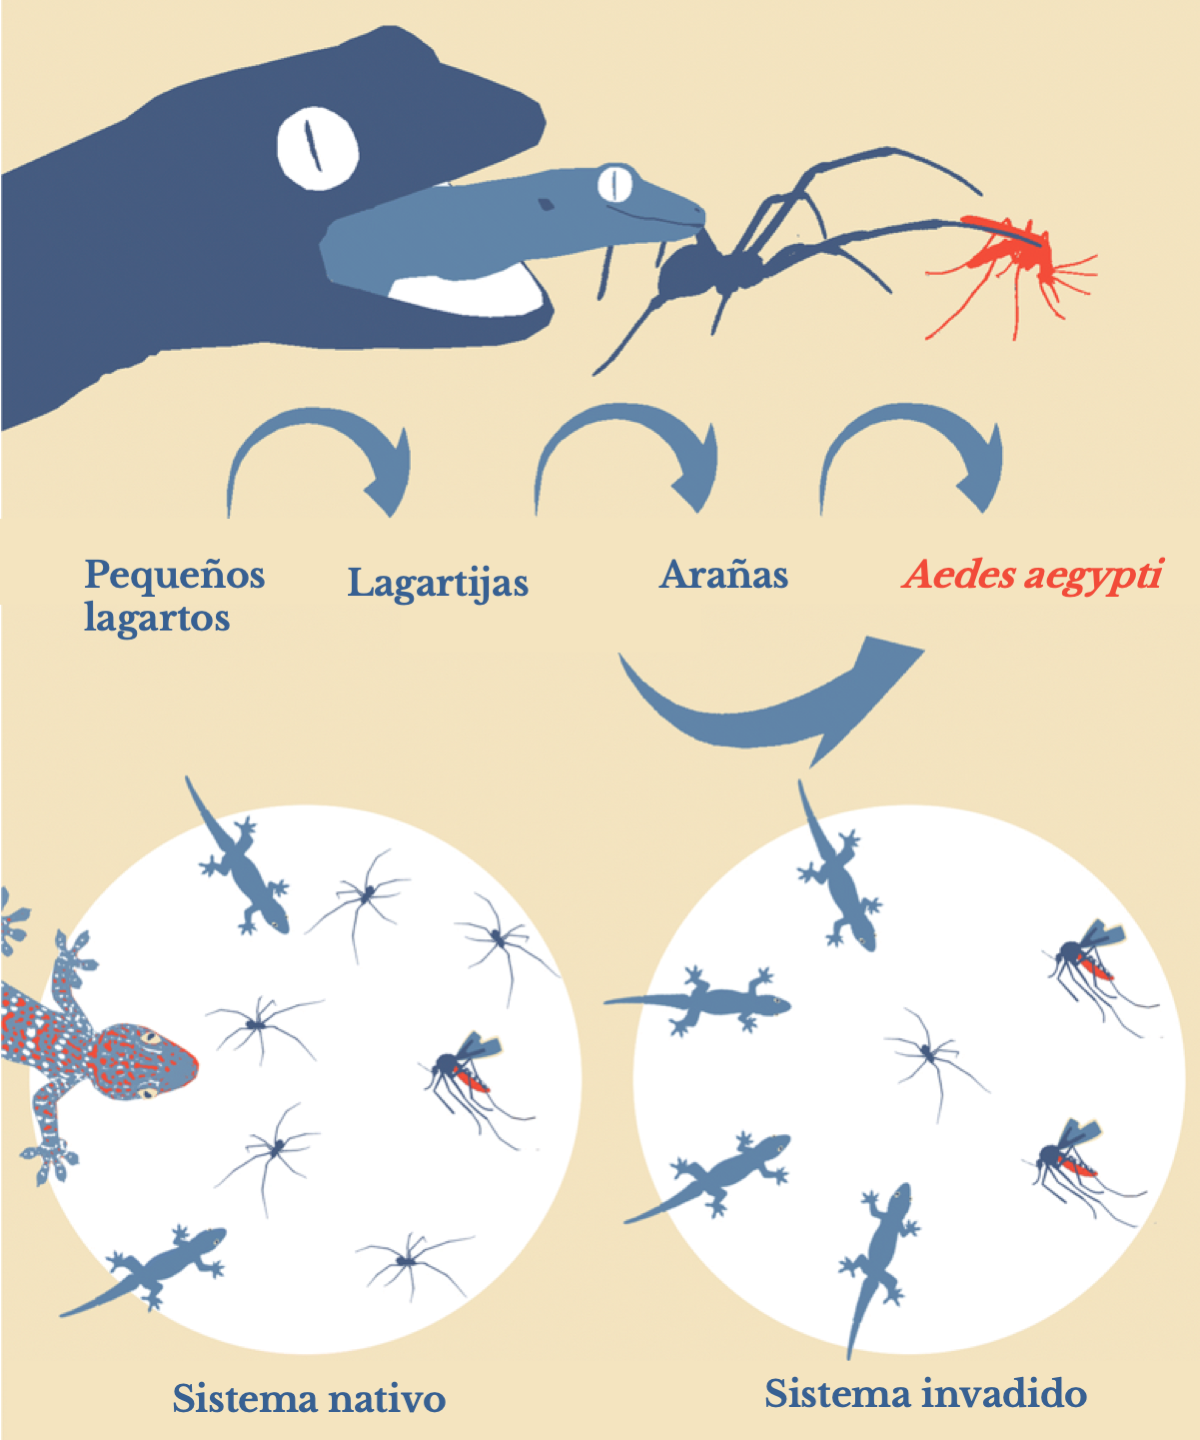 Proliferación de dengue por especies invasoras (español)